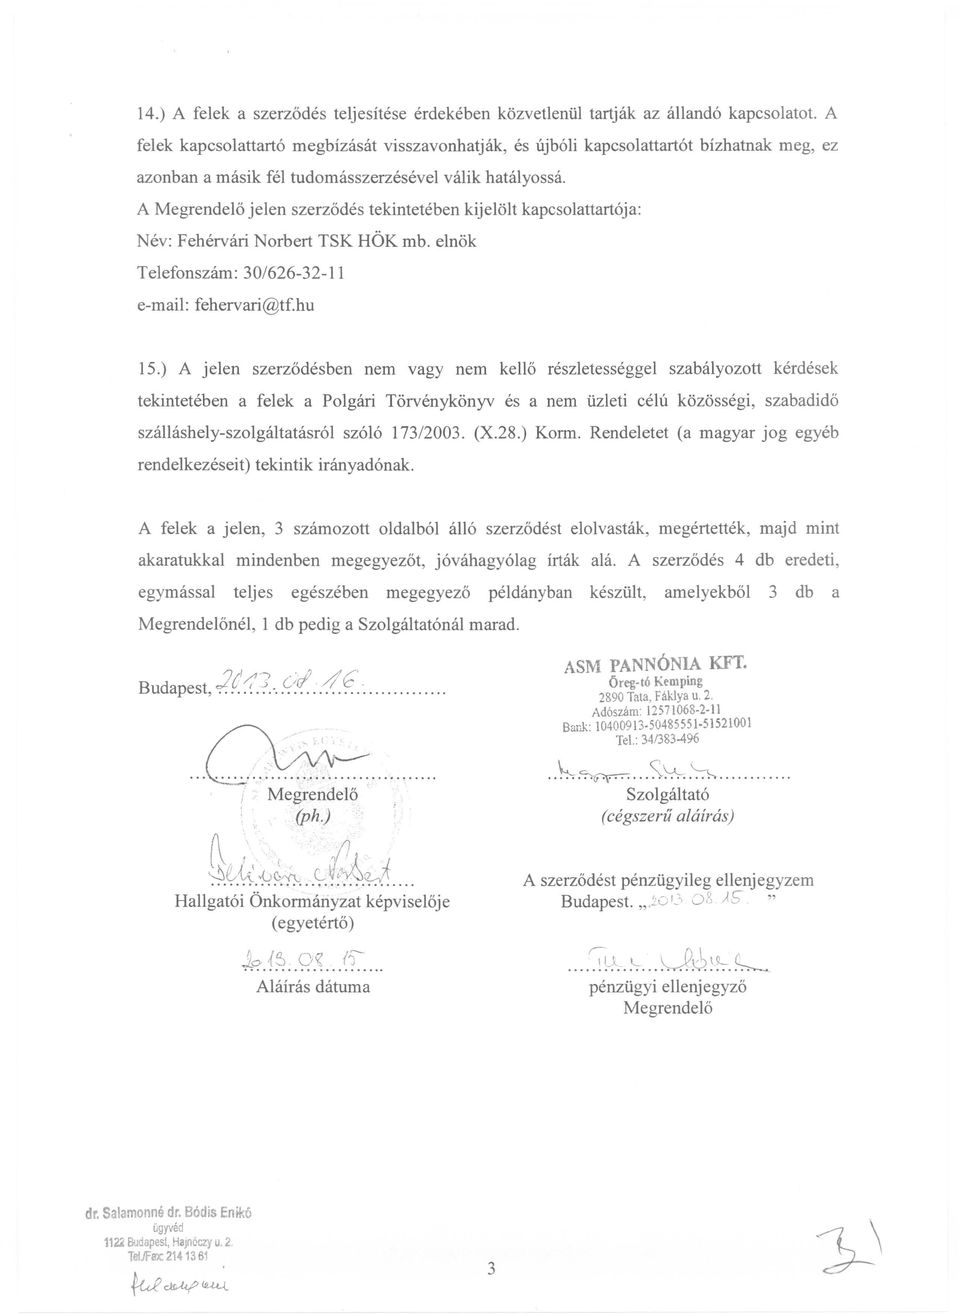 A Megrendelő jelen szerződés tekintetében kijelölt kapcsolattartója: Név: Fehérvári Norbert TSK HÖK mb. elnök Telefonszám: 30/626-32-11 e-mail: fehervari@tf.hu 15.